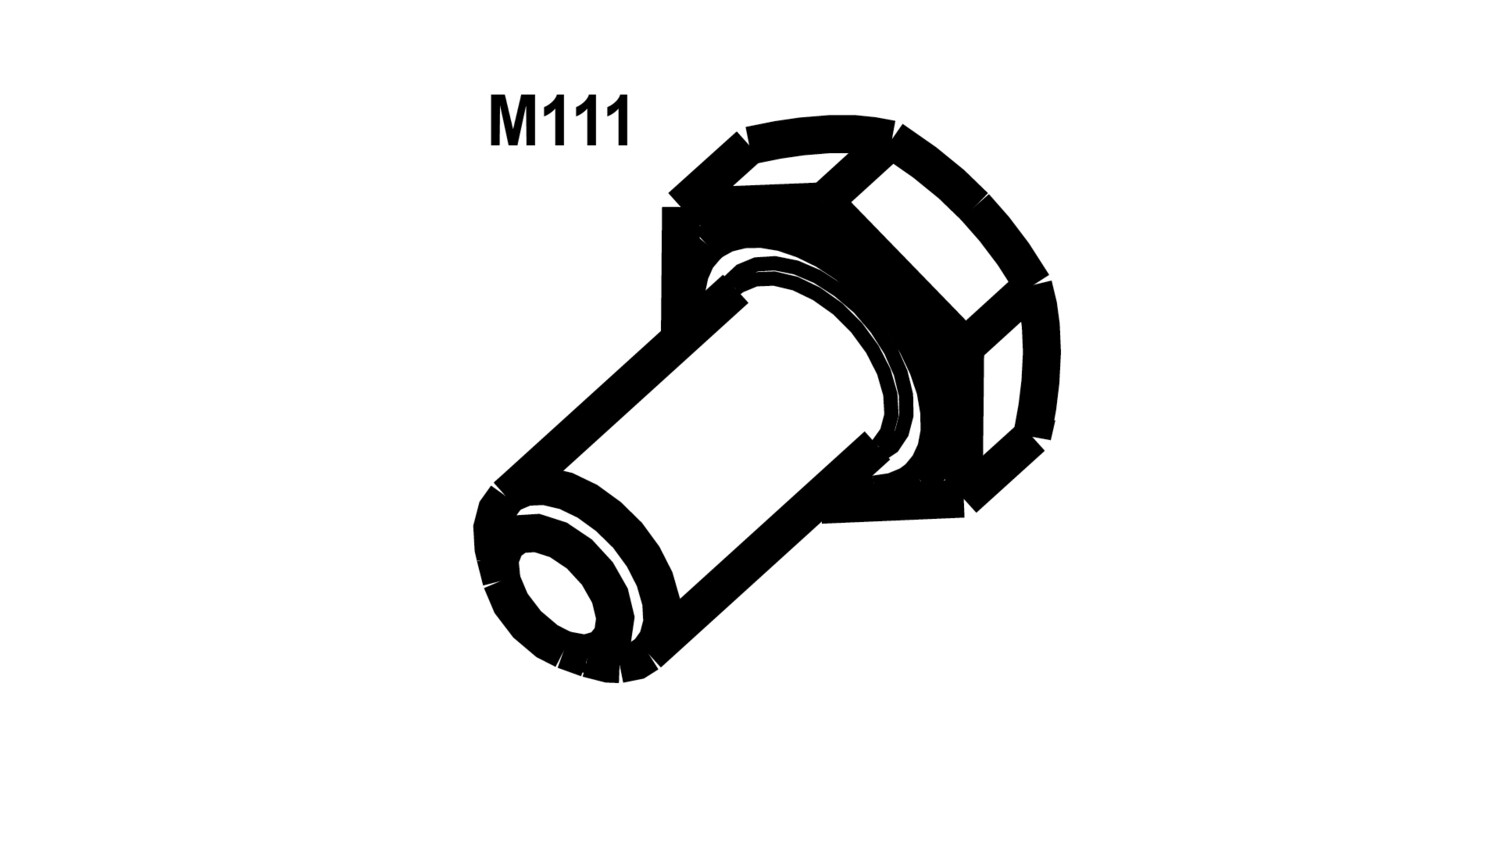 M111a